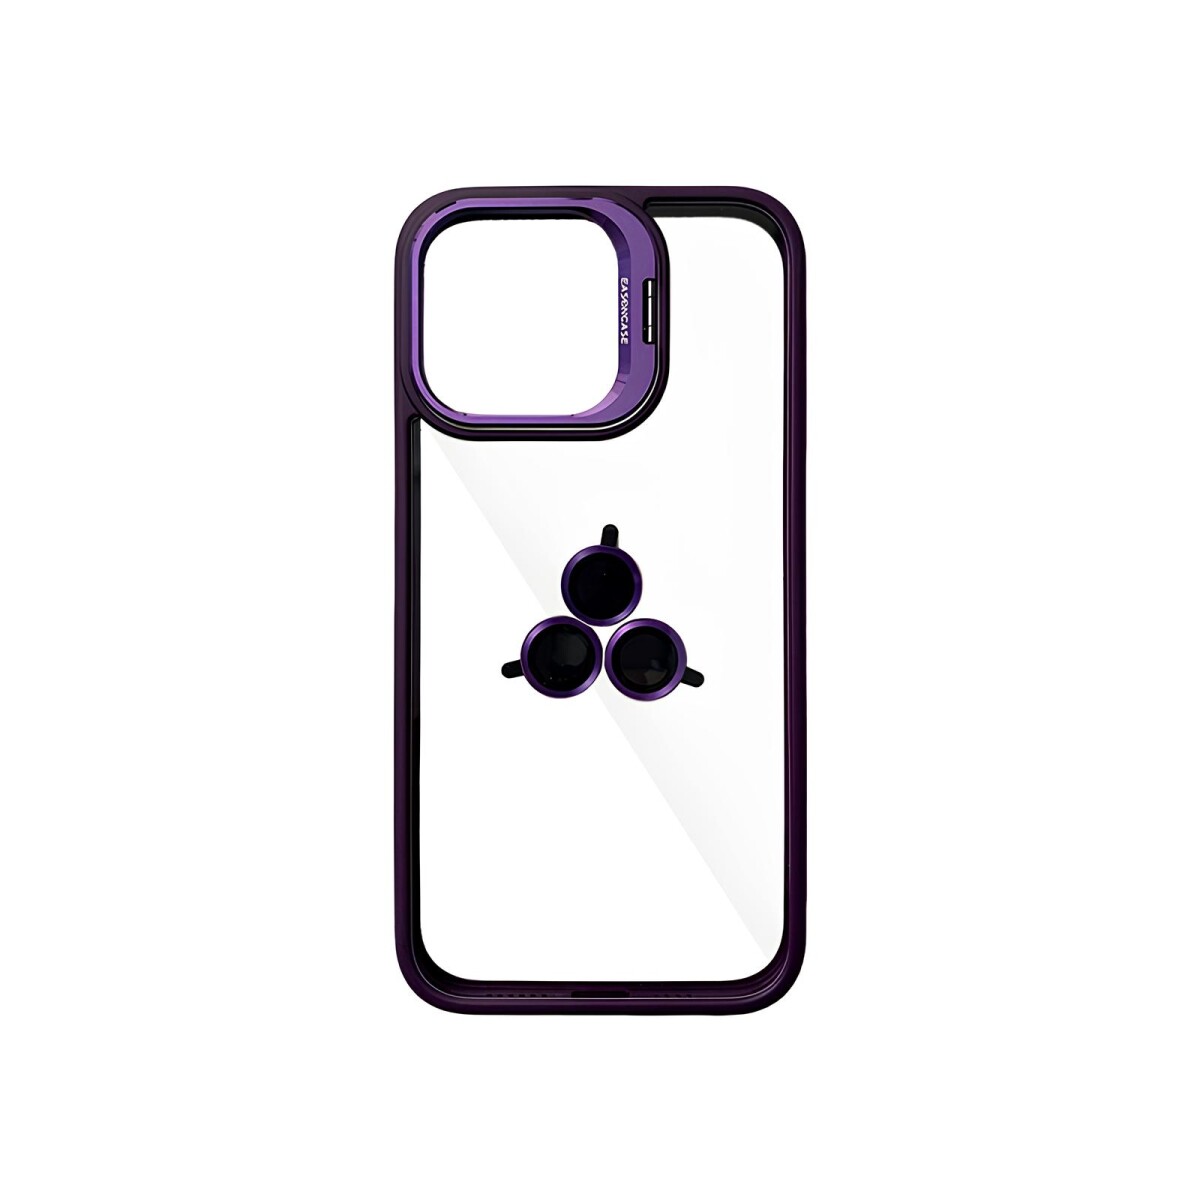 Case Transparente con Borde de Color y Protector de Lente Iphone 11 - Violeta 